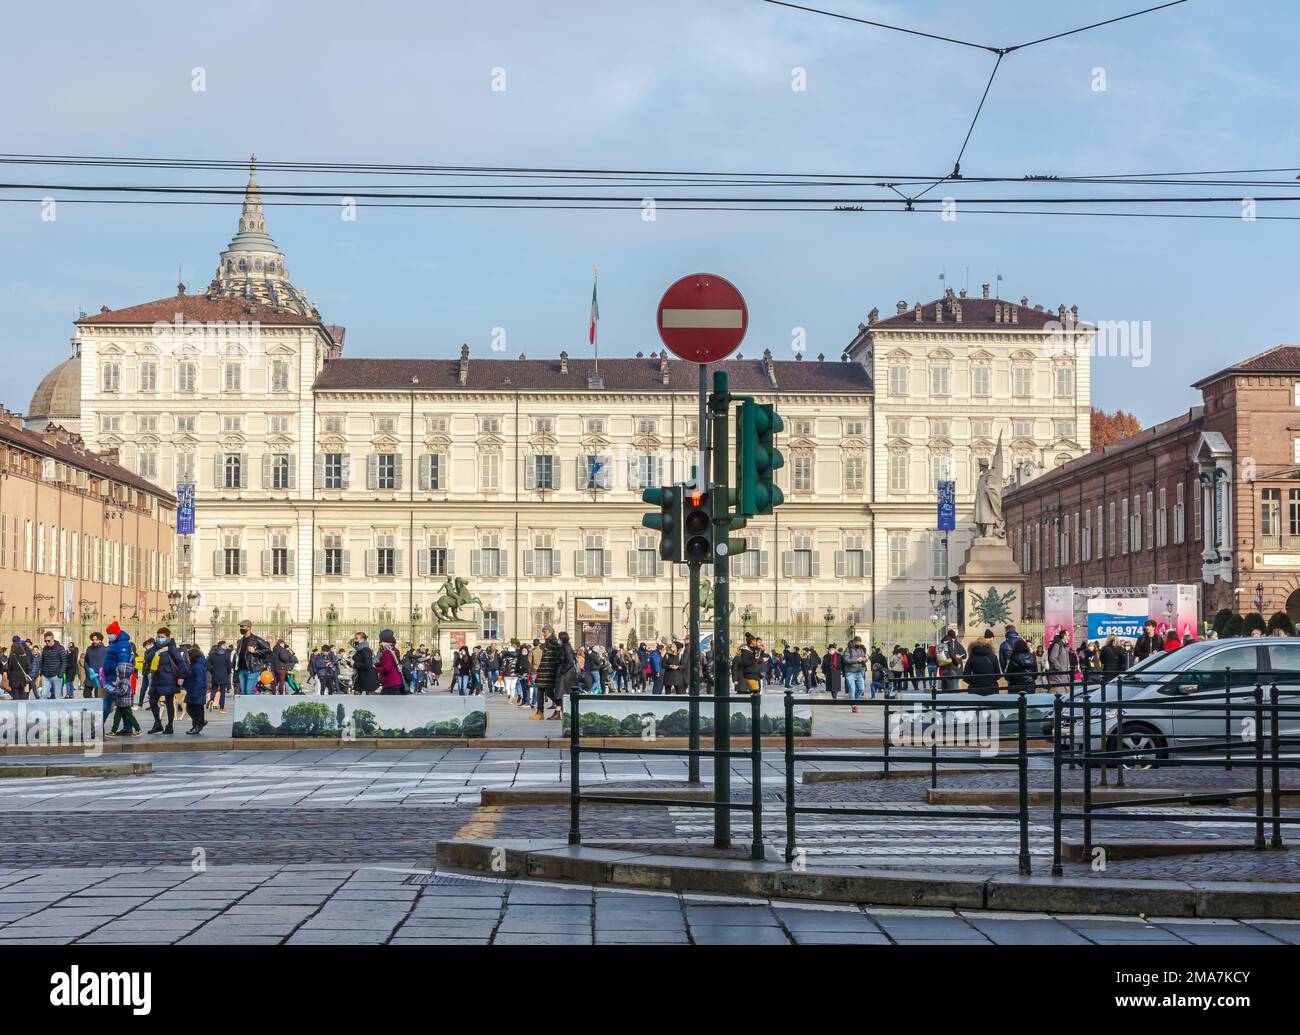 Piazza del Castello di Torino con Palazzo reale. Centro storico di Torino, Piemonte nel nord Italia, Europa. Foto Stock